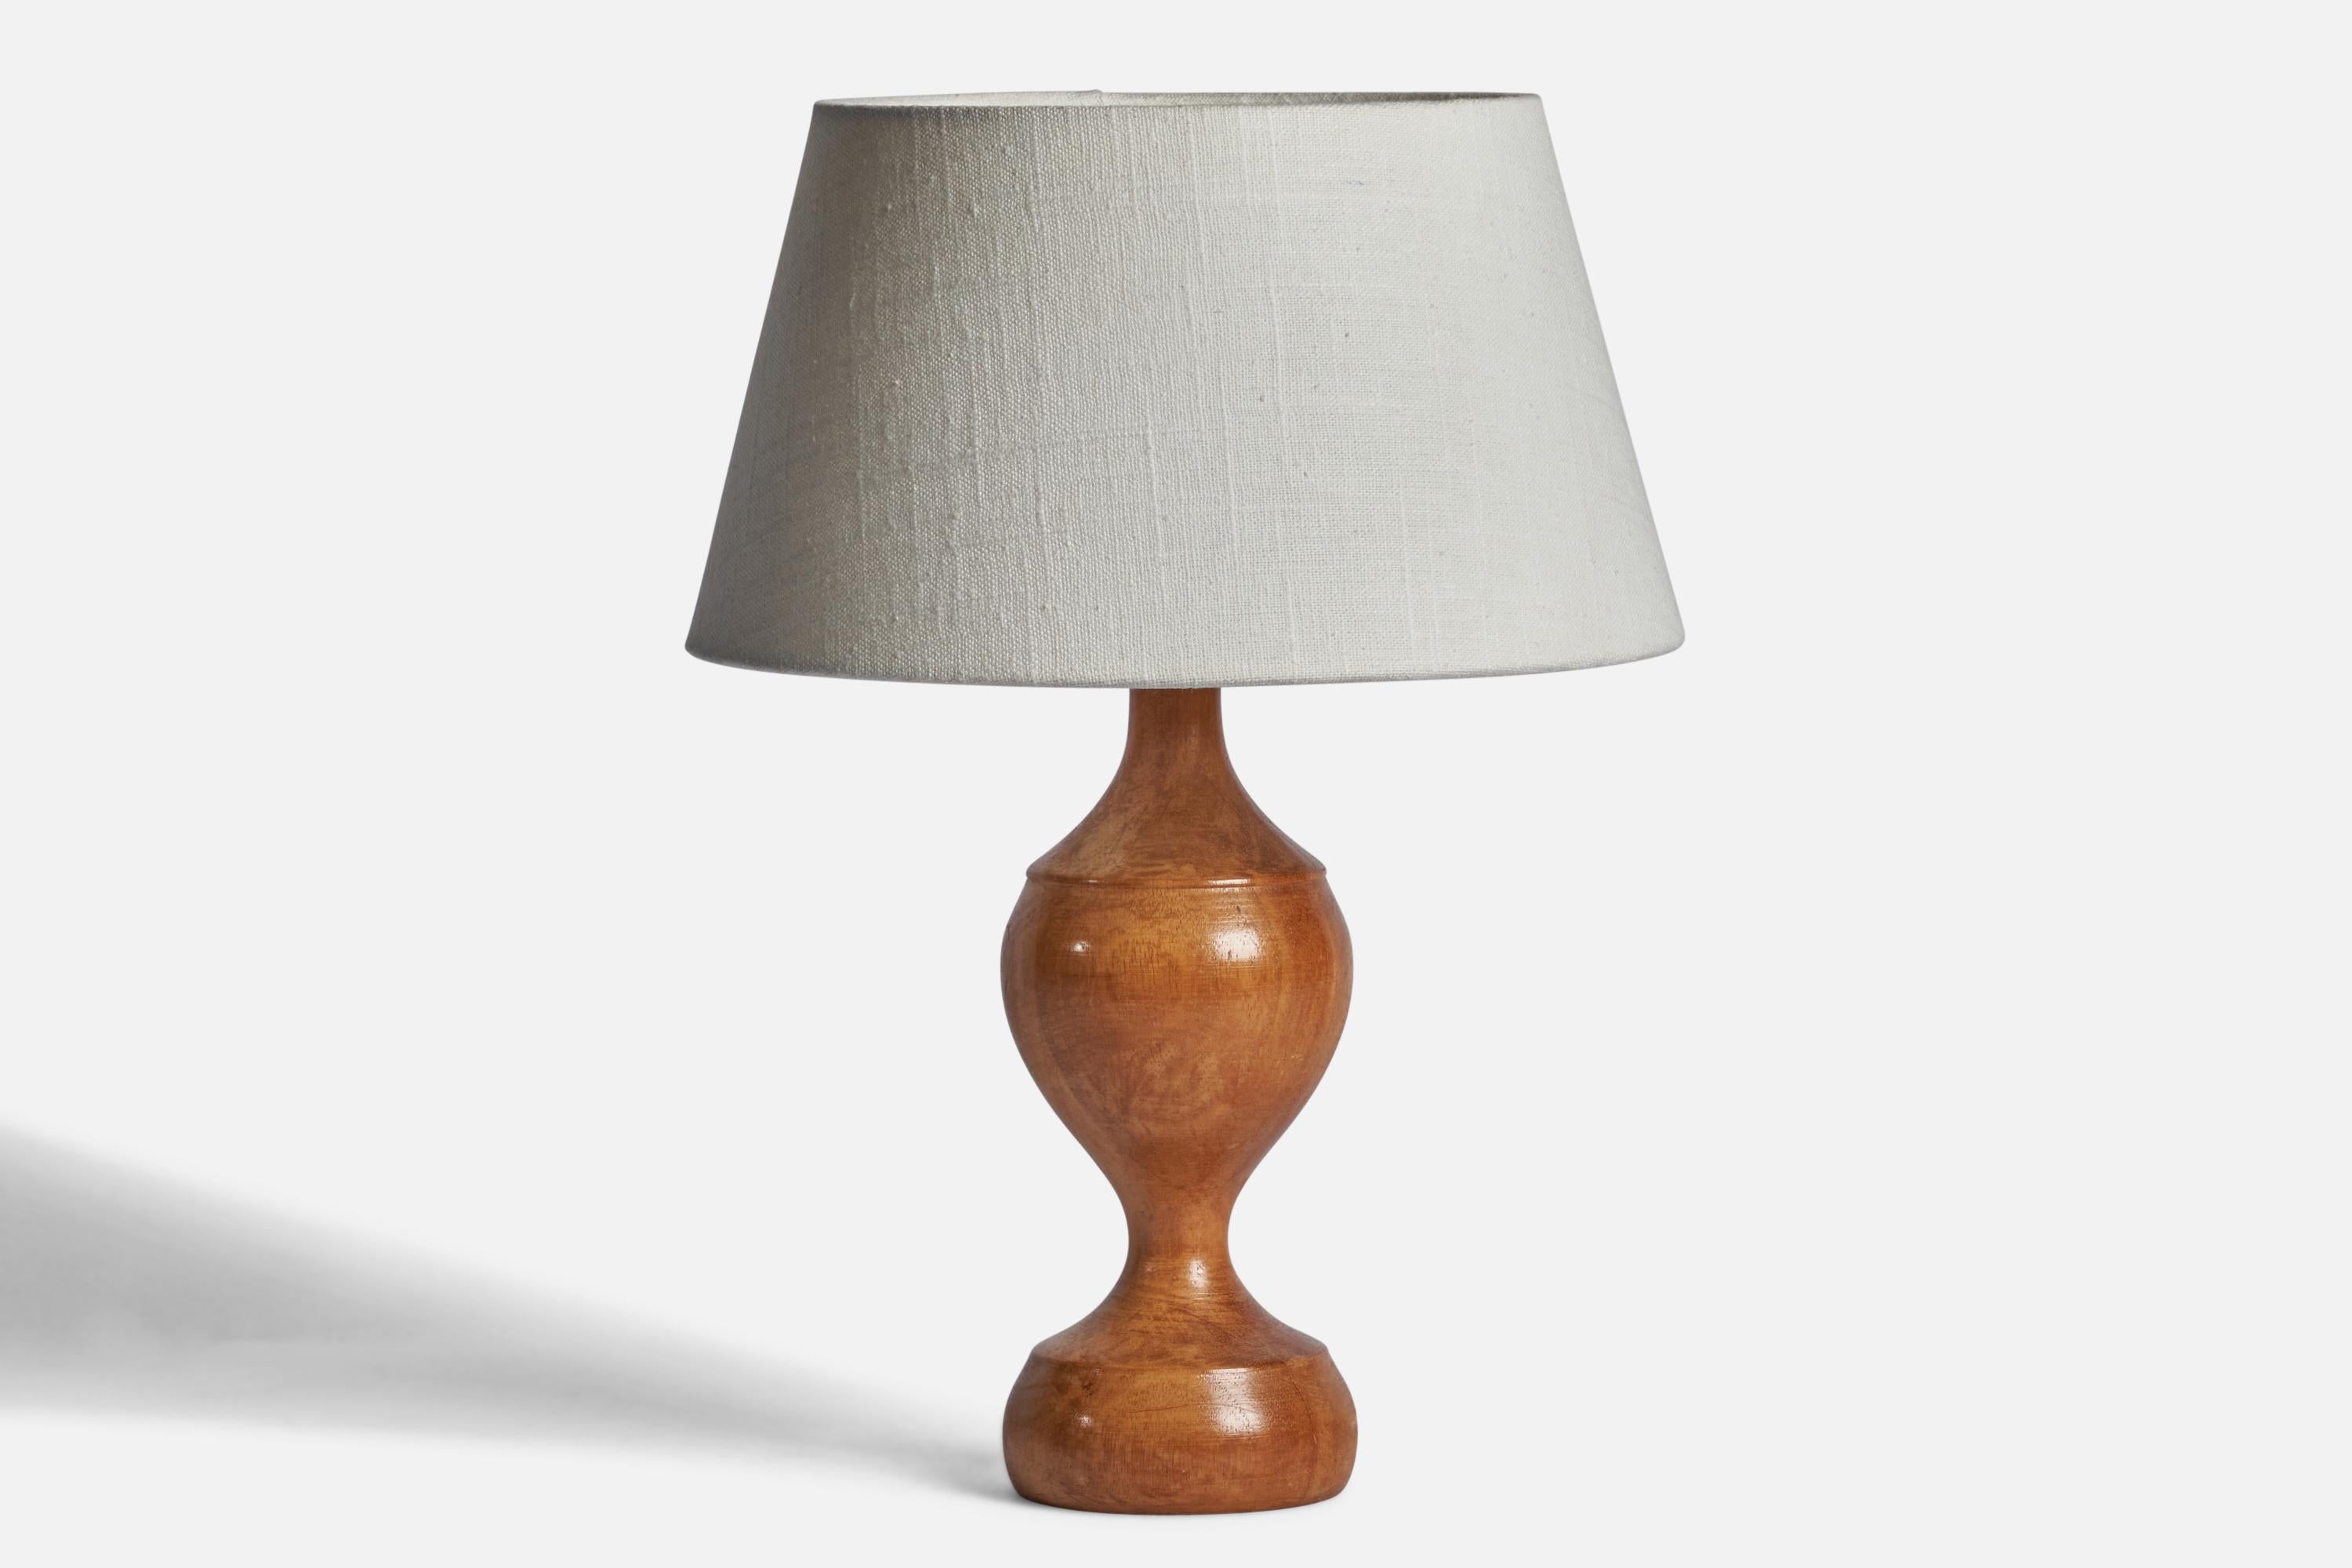 Eine Tischlampe aus Birkenholz, entworfen und hergestellt in Schweden, 1960er Jahre.

Abmessungen der Lampe (Zoll): 11,35